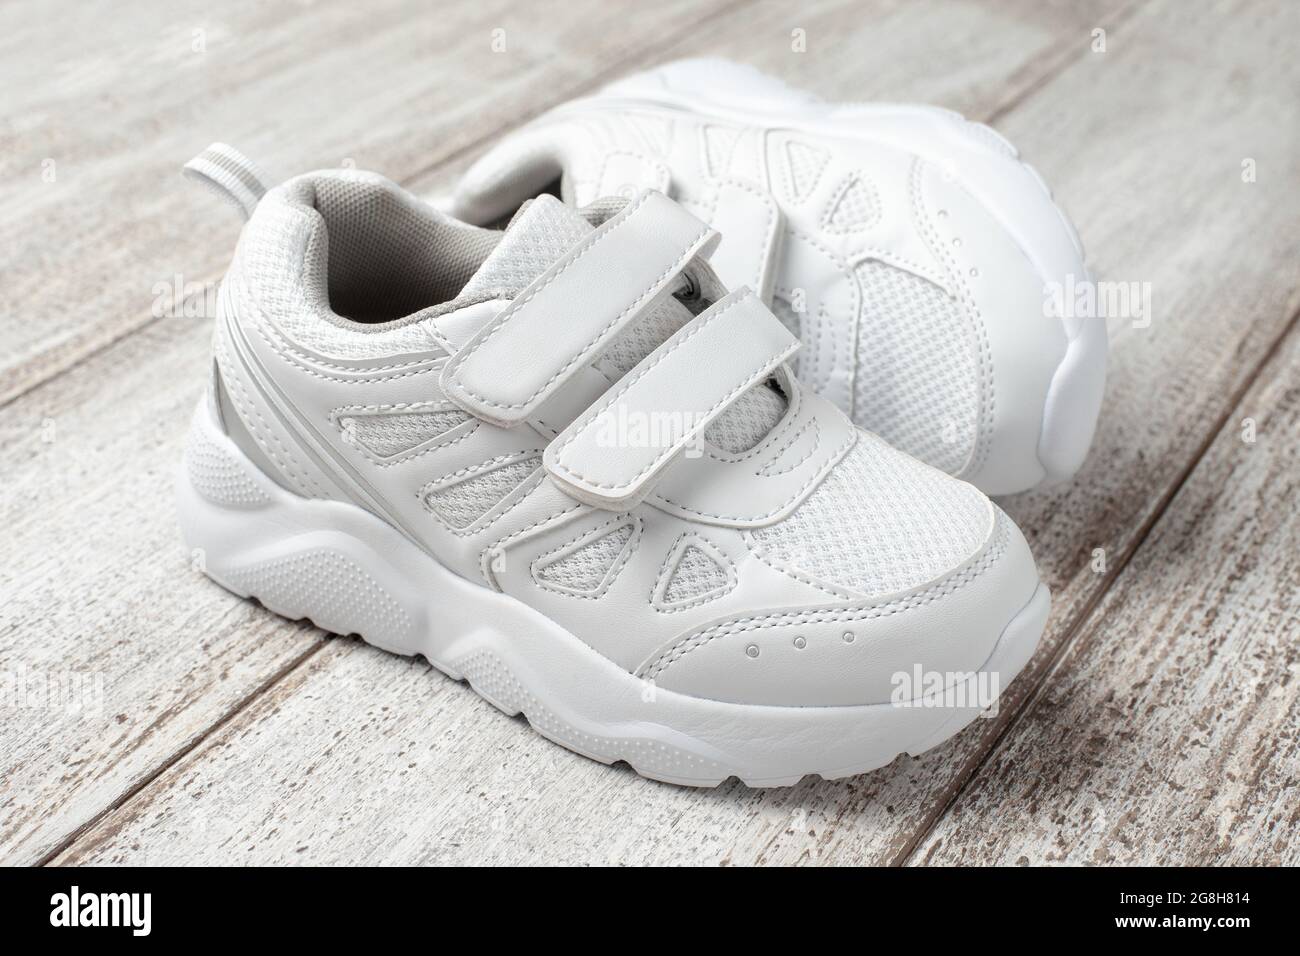 Weiße Sneaker auf hellem Hintergrund. Ein Paar Sport-Sneakers aus Leder für  Kinder, genäht mit einem Stoff mit Klettverschluss, auf dem ein Schuh liegt  Stockfotografie - Alamy